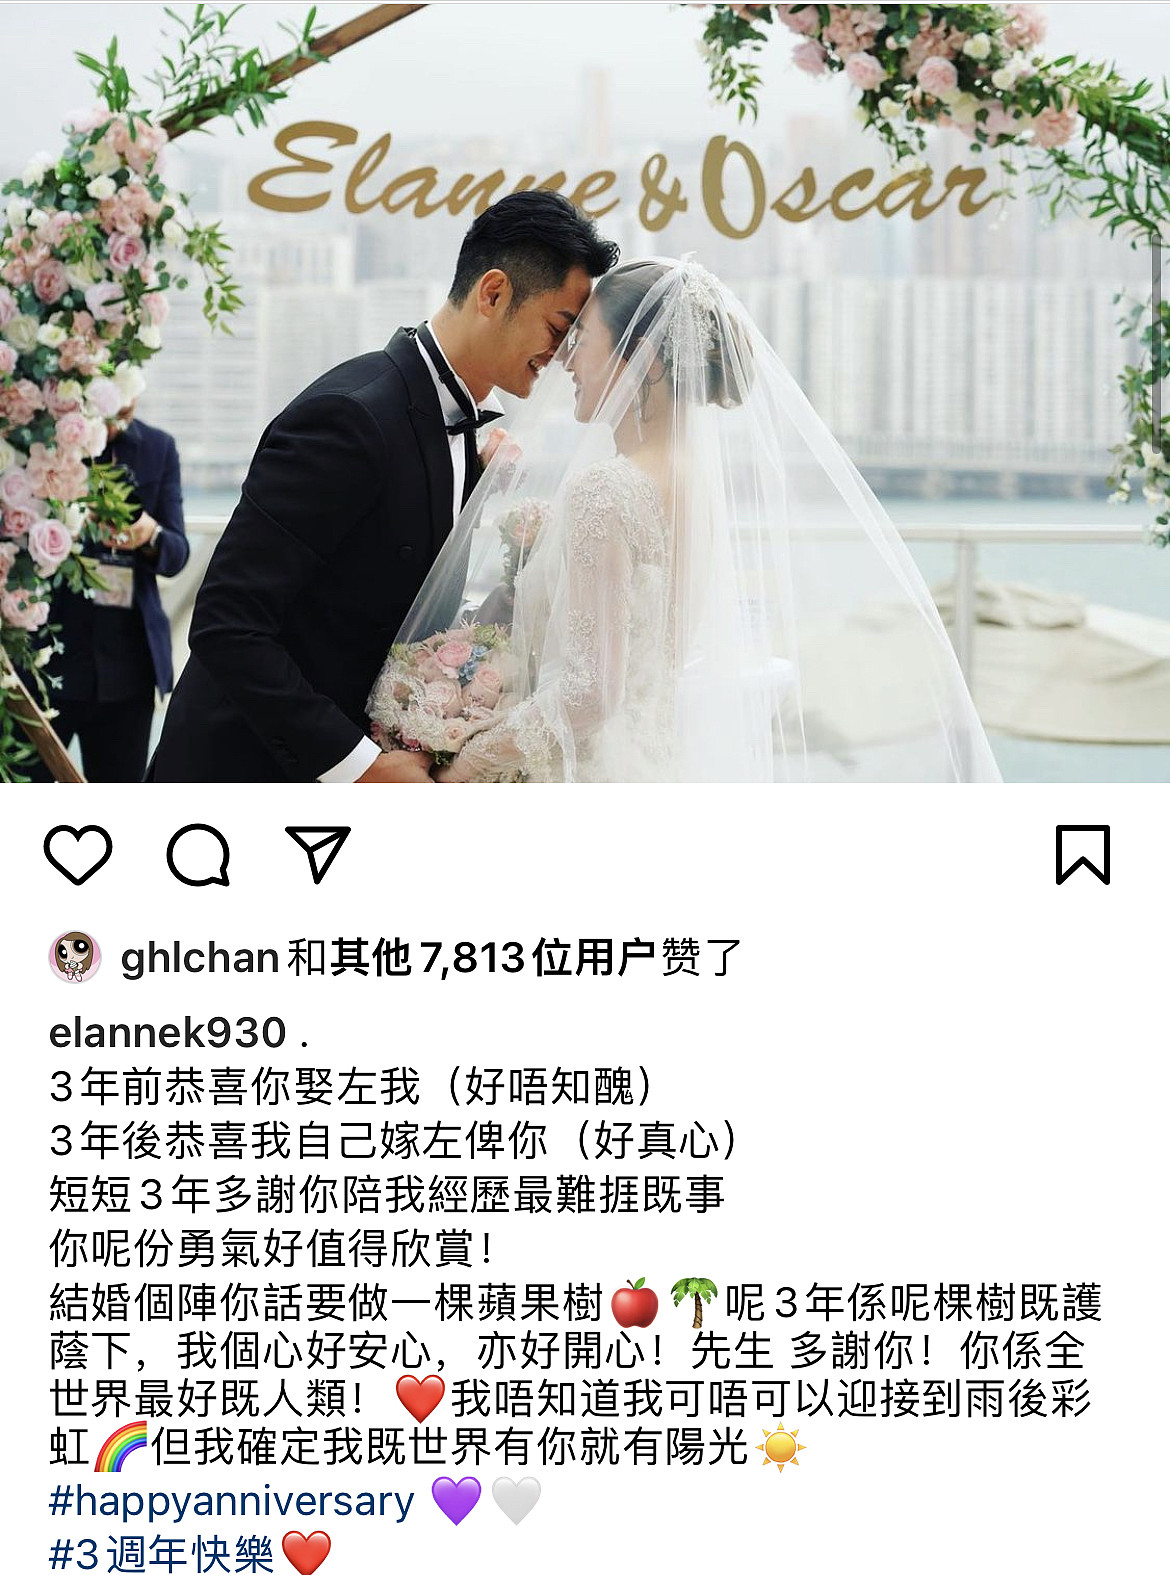 江若琳庆祝结婚三周年，与丈夫吃鱼蛋粉度过，感慨嫁给对方是福气 - 6